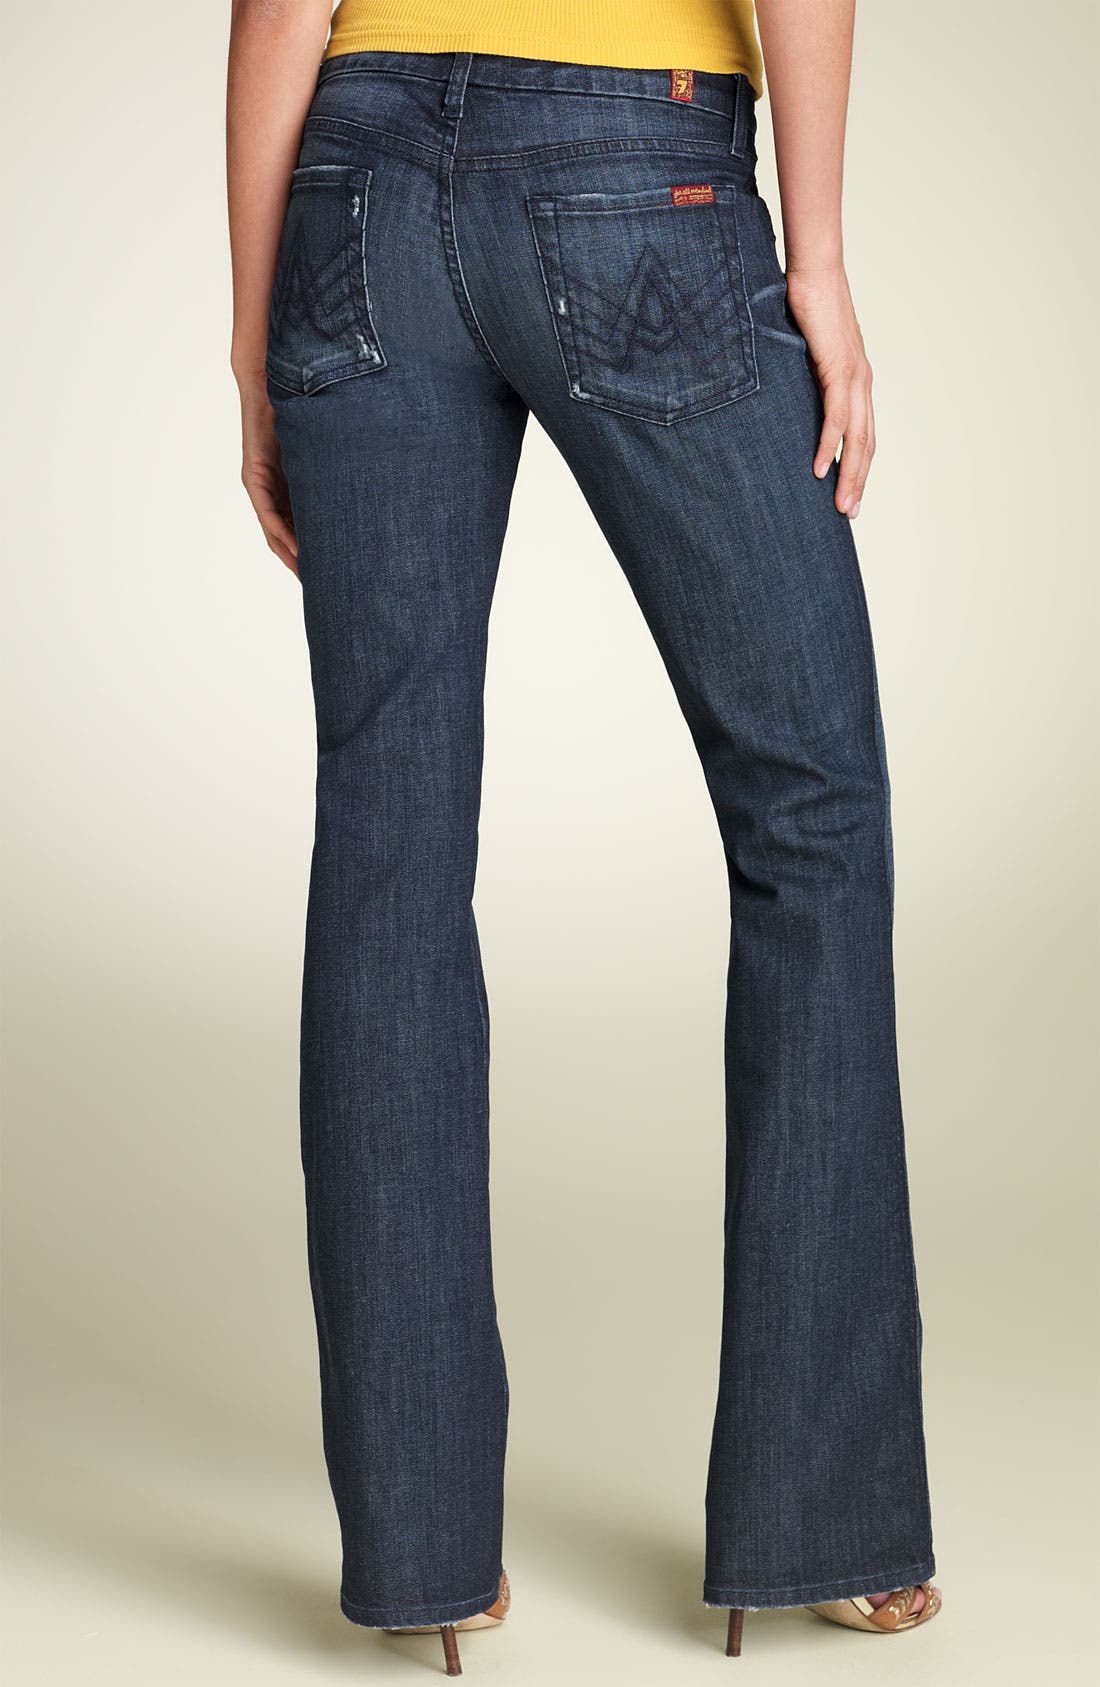 gap velvet skinny jeans